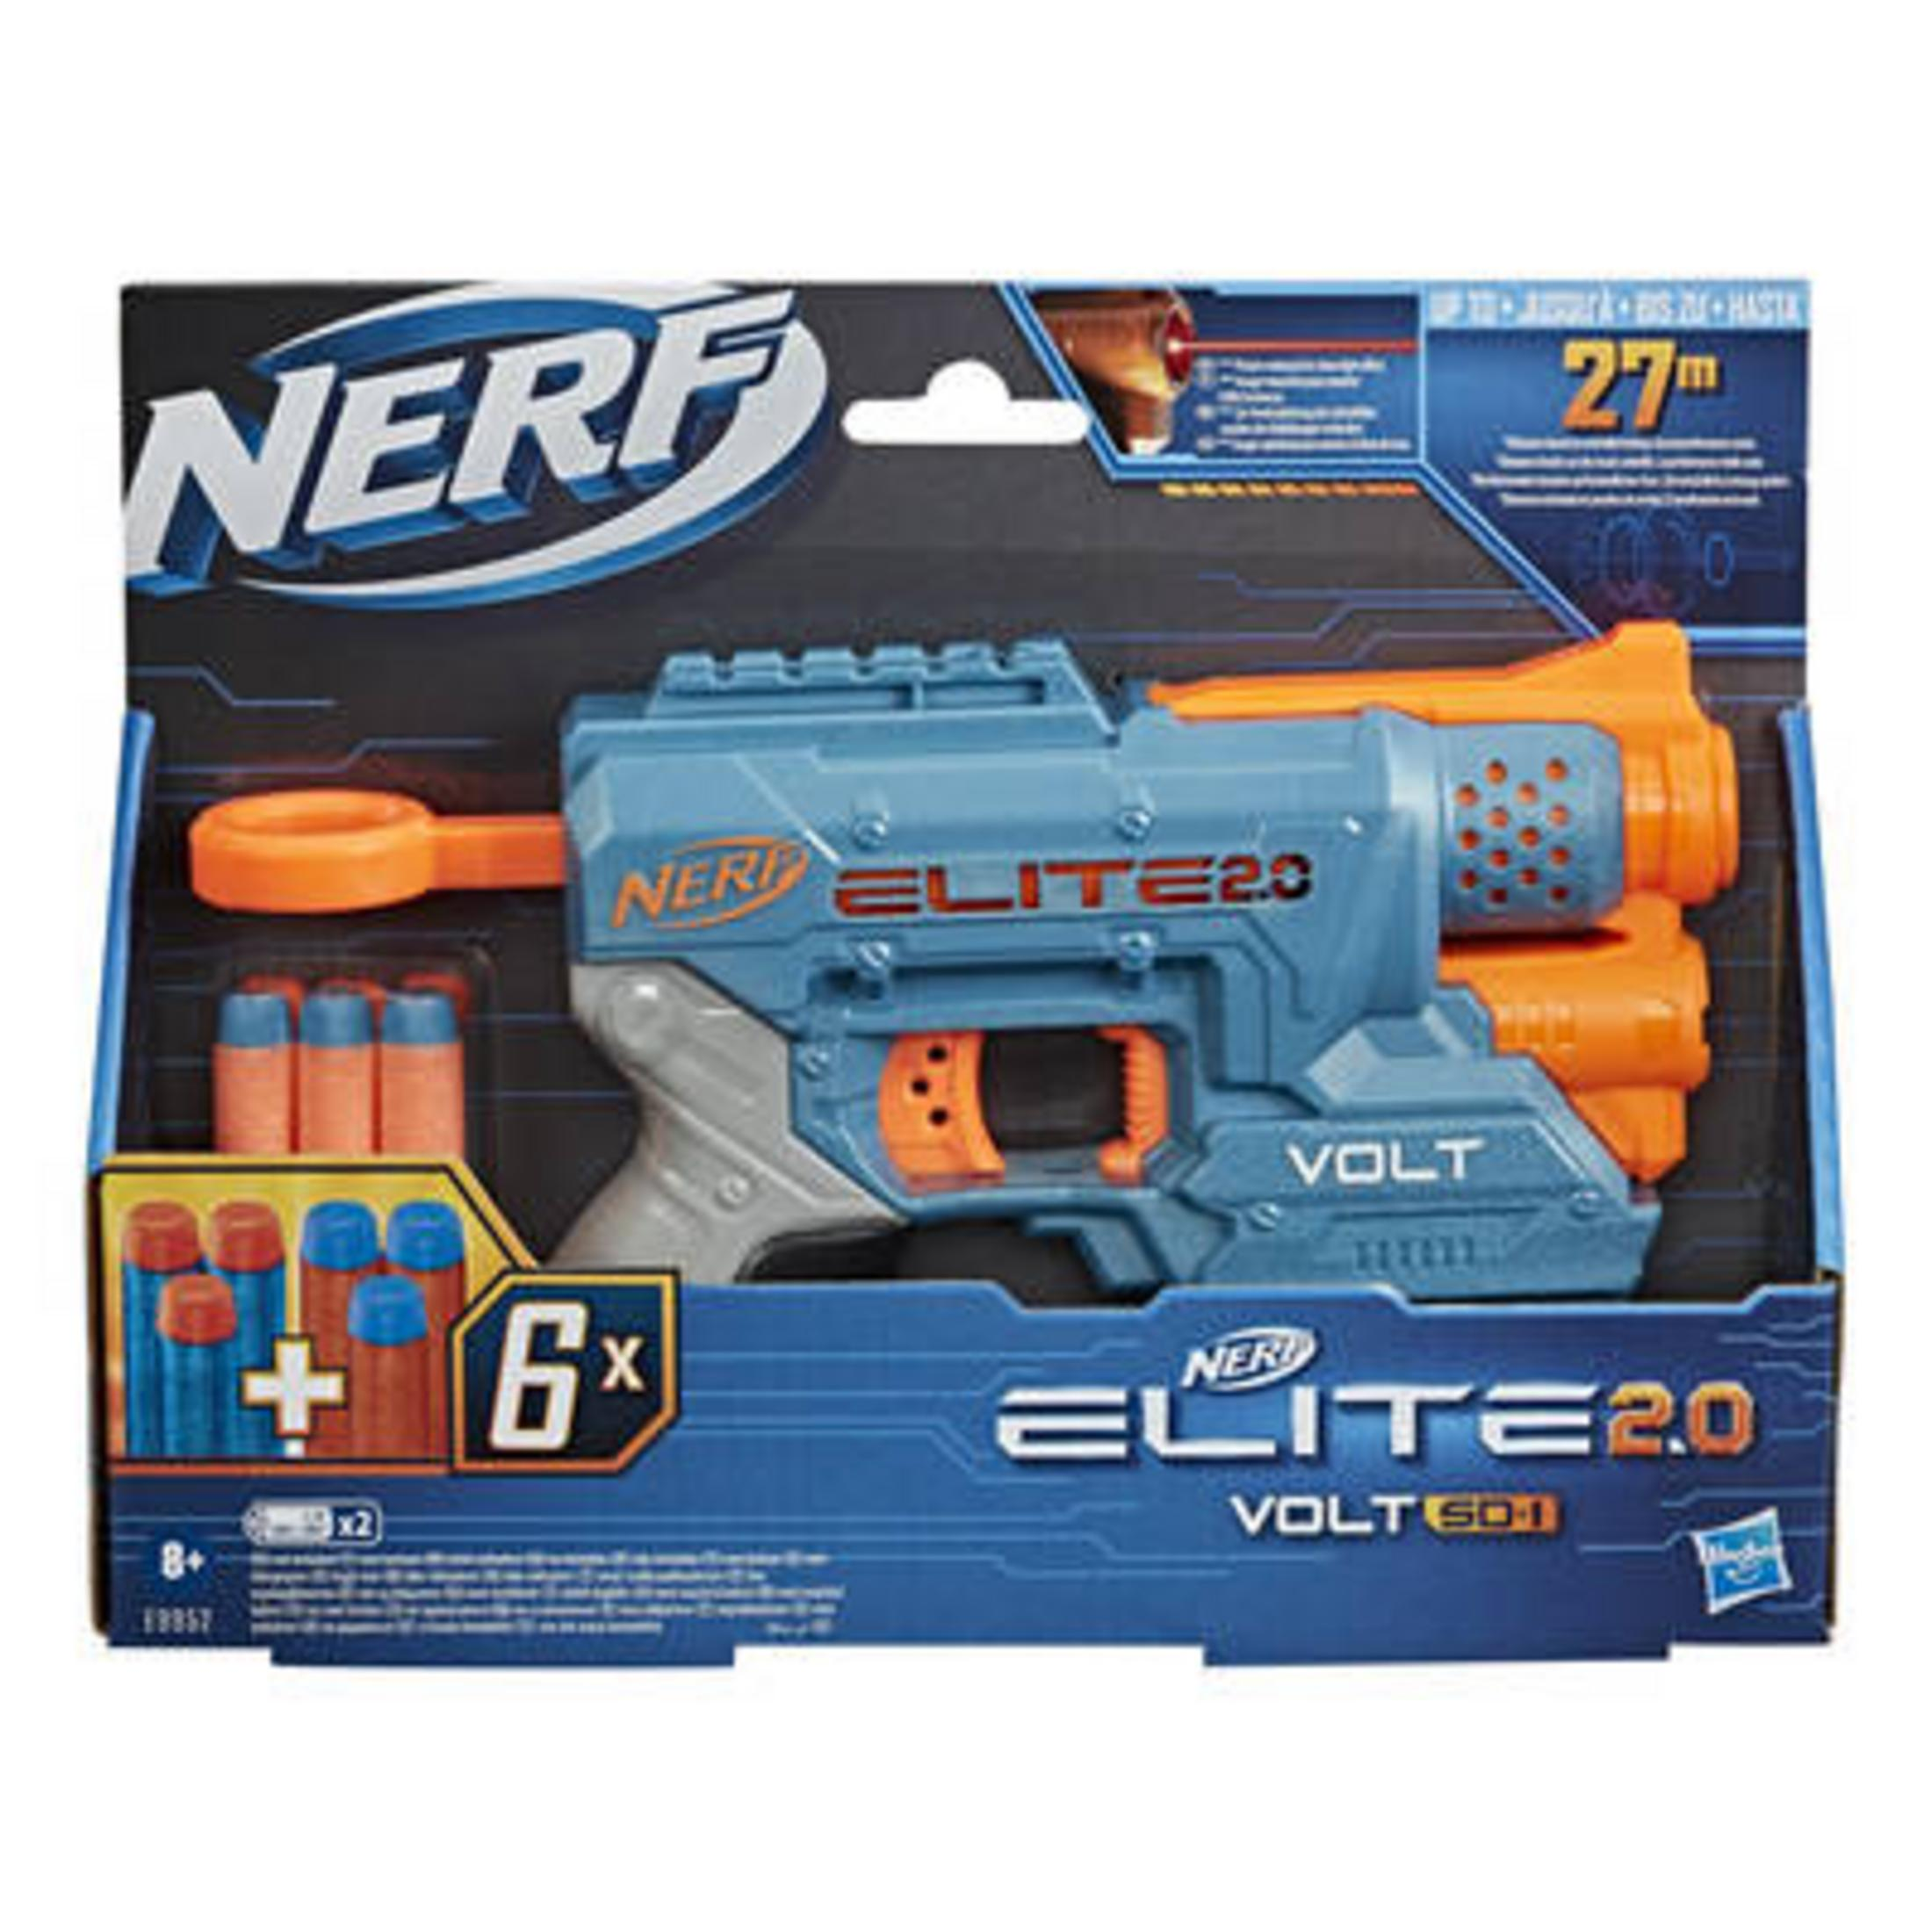 NERF E9952EU4 NERF ELITE Mehrfarbig 1 VOLT 2.0 SD Blaster